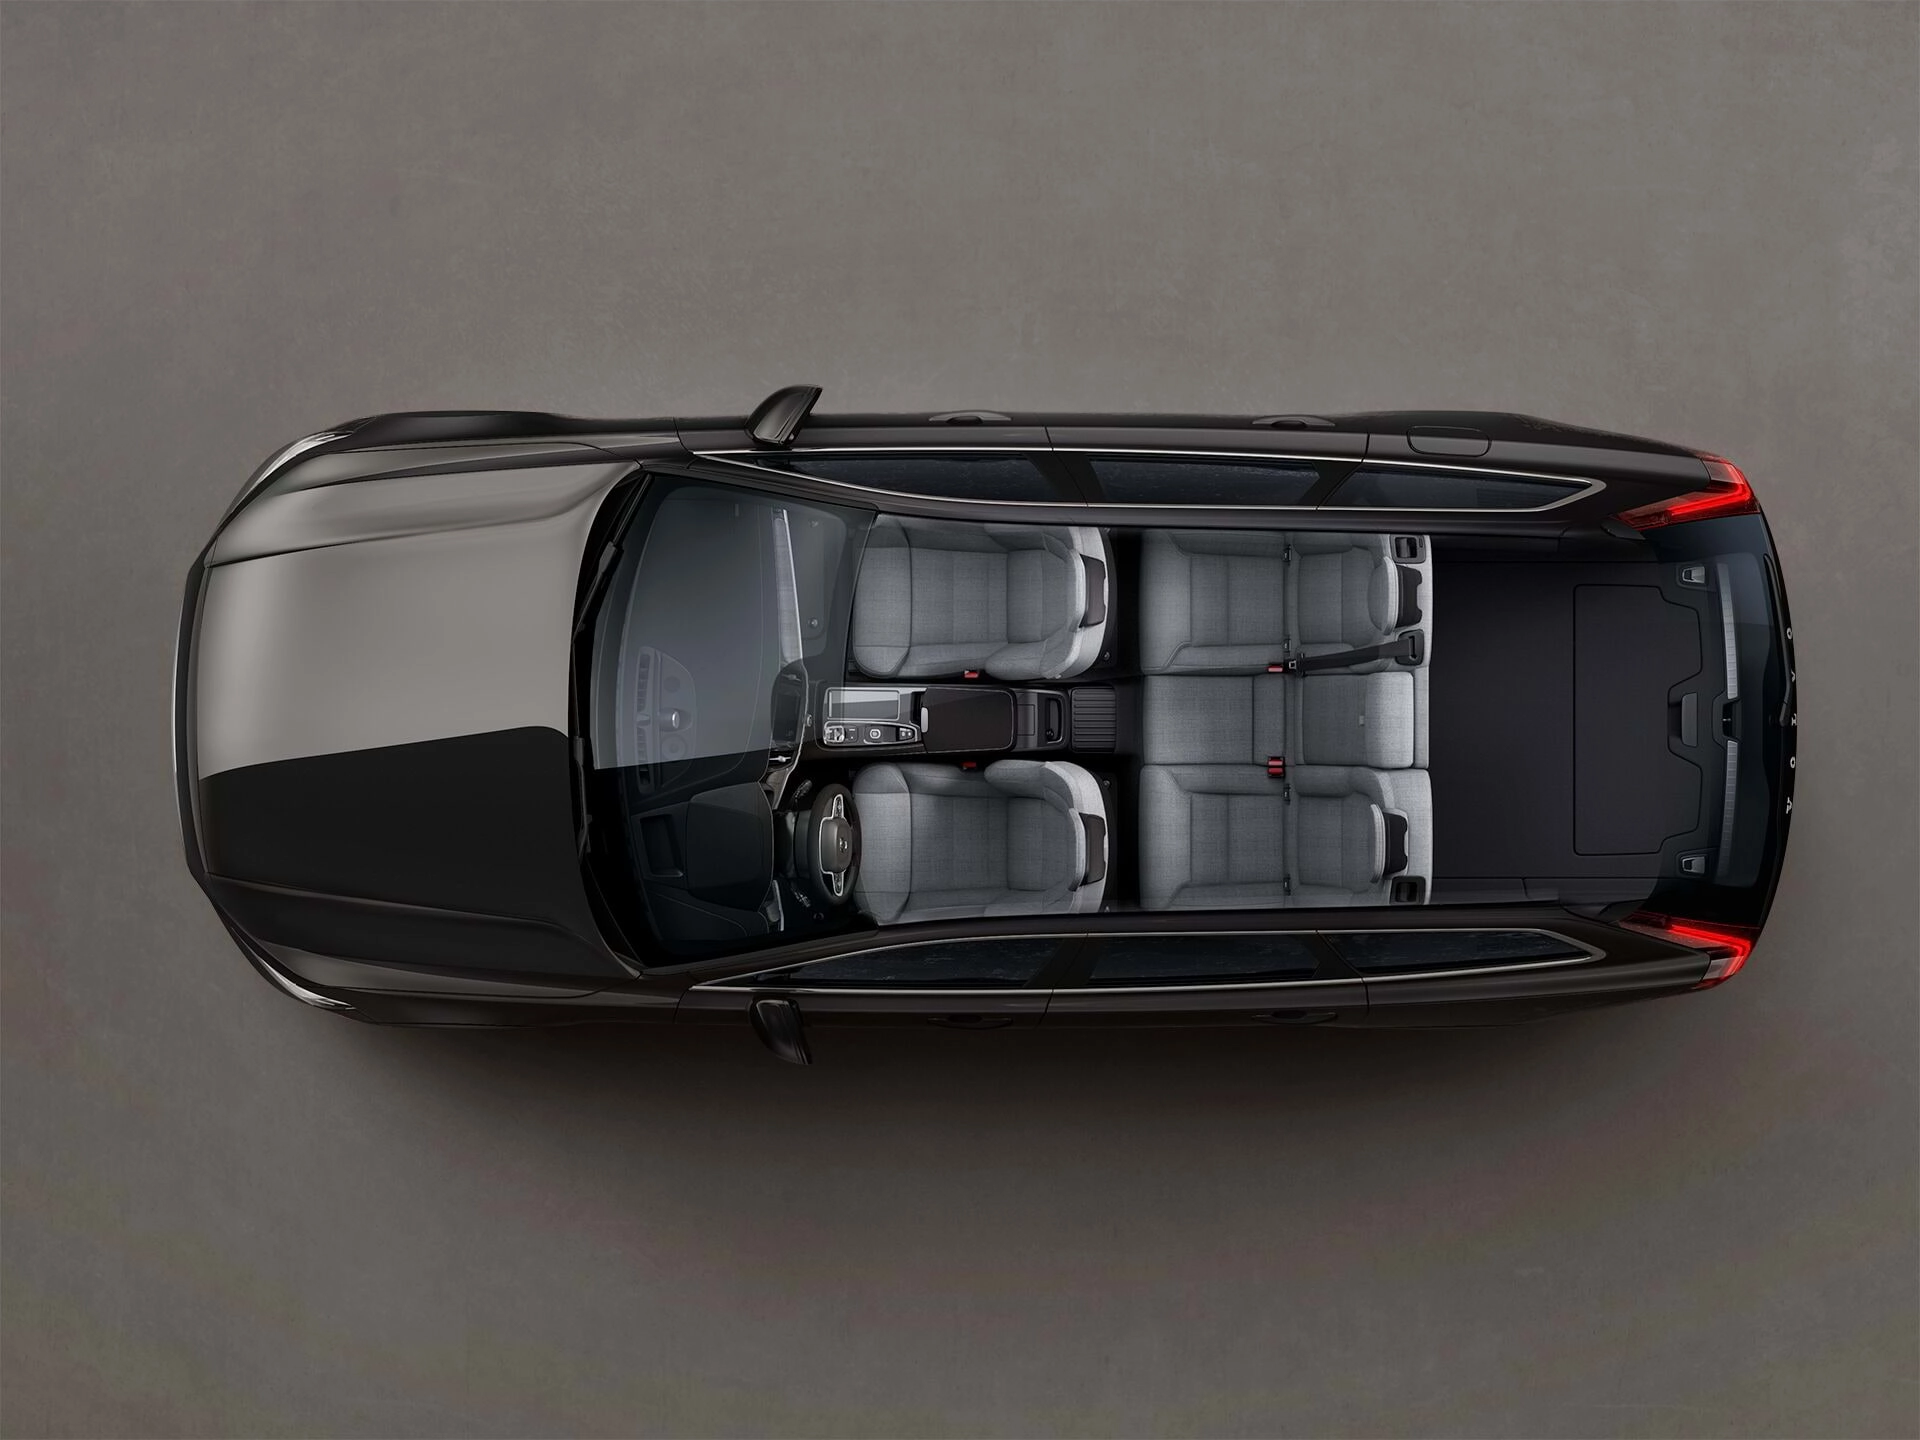 Vista panorámica del amplio interior de la cabina de cinco asientos de un vehículo familiar Volvo.